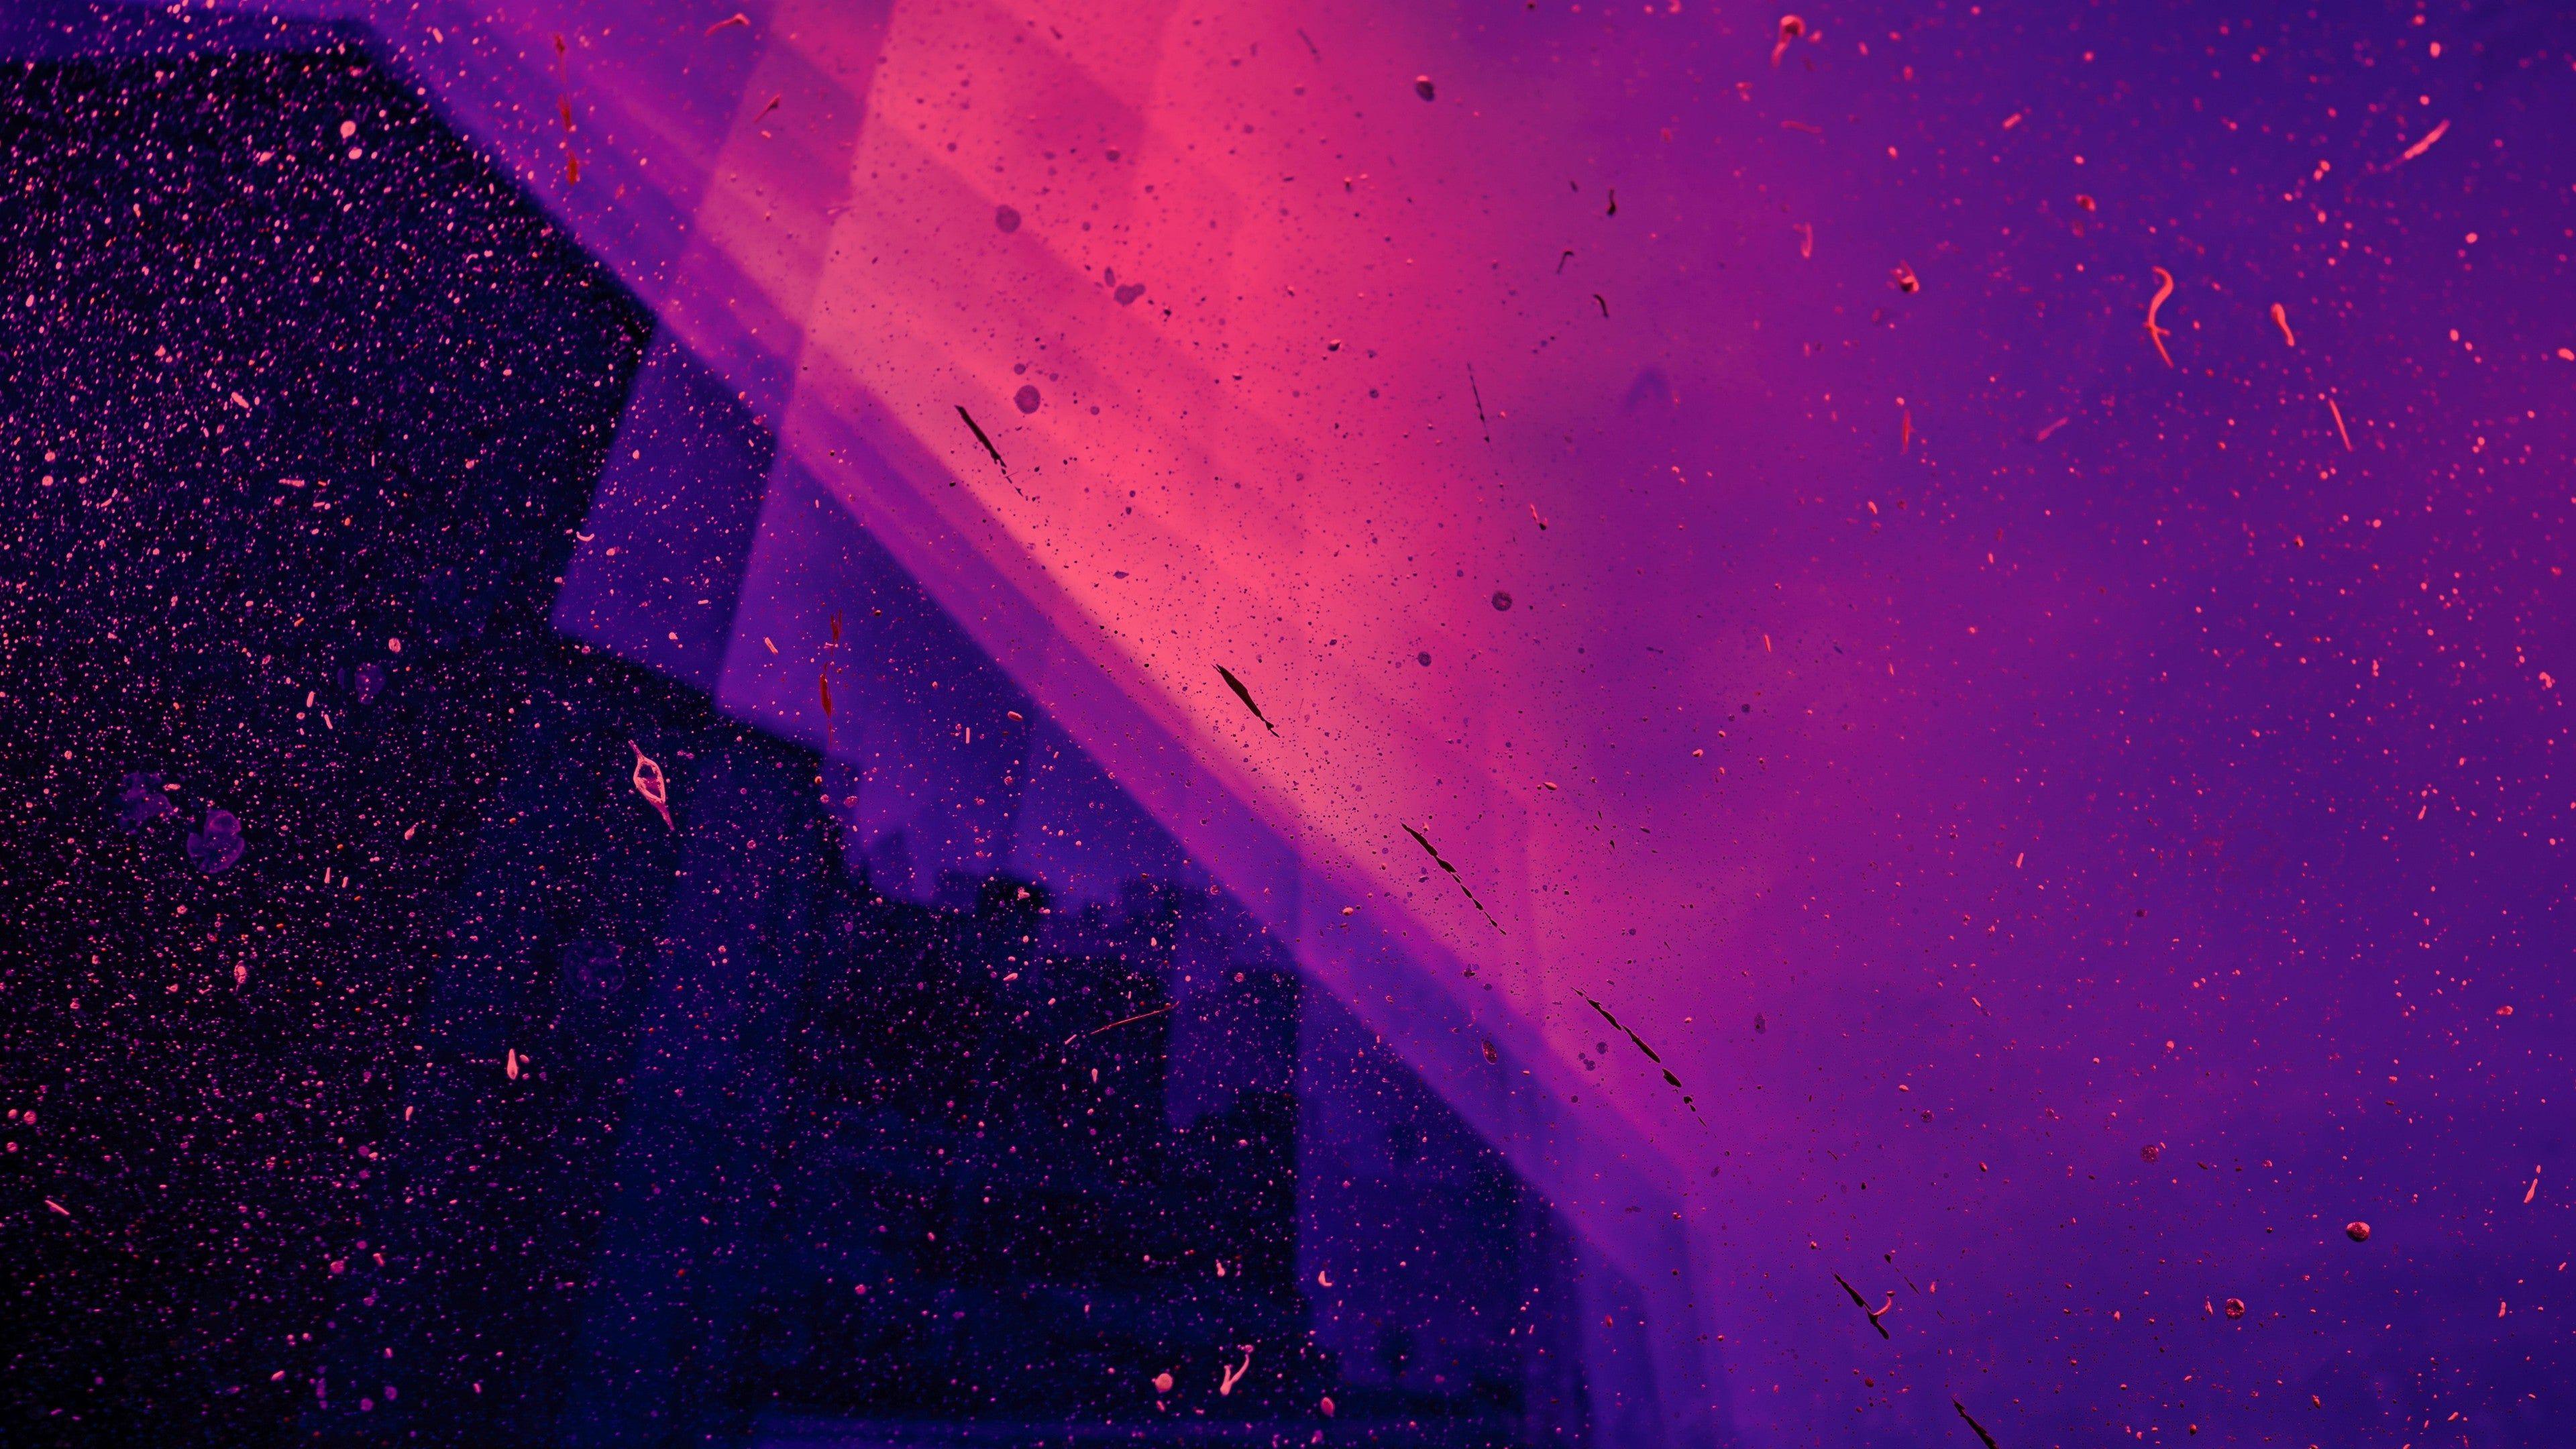 Neon Purple: Màu tím là một trong những màu sắc đẹp nhất của thiên nhiên. Khi kết hợp với ánh sáng neon, màu tím trở nên càng lấp lánh và nổi bật hơn. Hãy xem hình ảnh và khám phá sự kết hợp độc đáo này. Bạn sẽ không thể rời mắt khỏi màn hình khi nhìn thấy màu neon tím đầy sức sống ở đây.